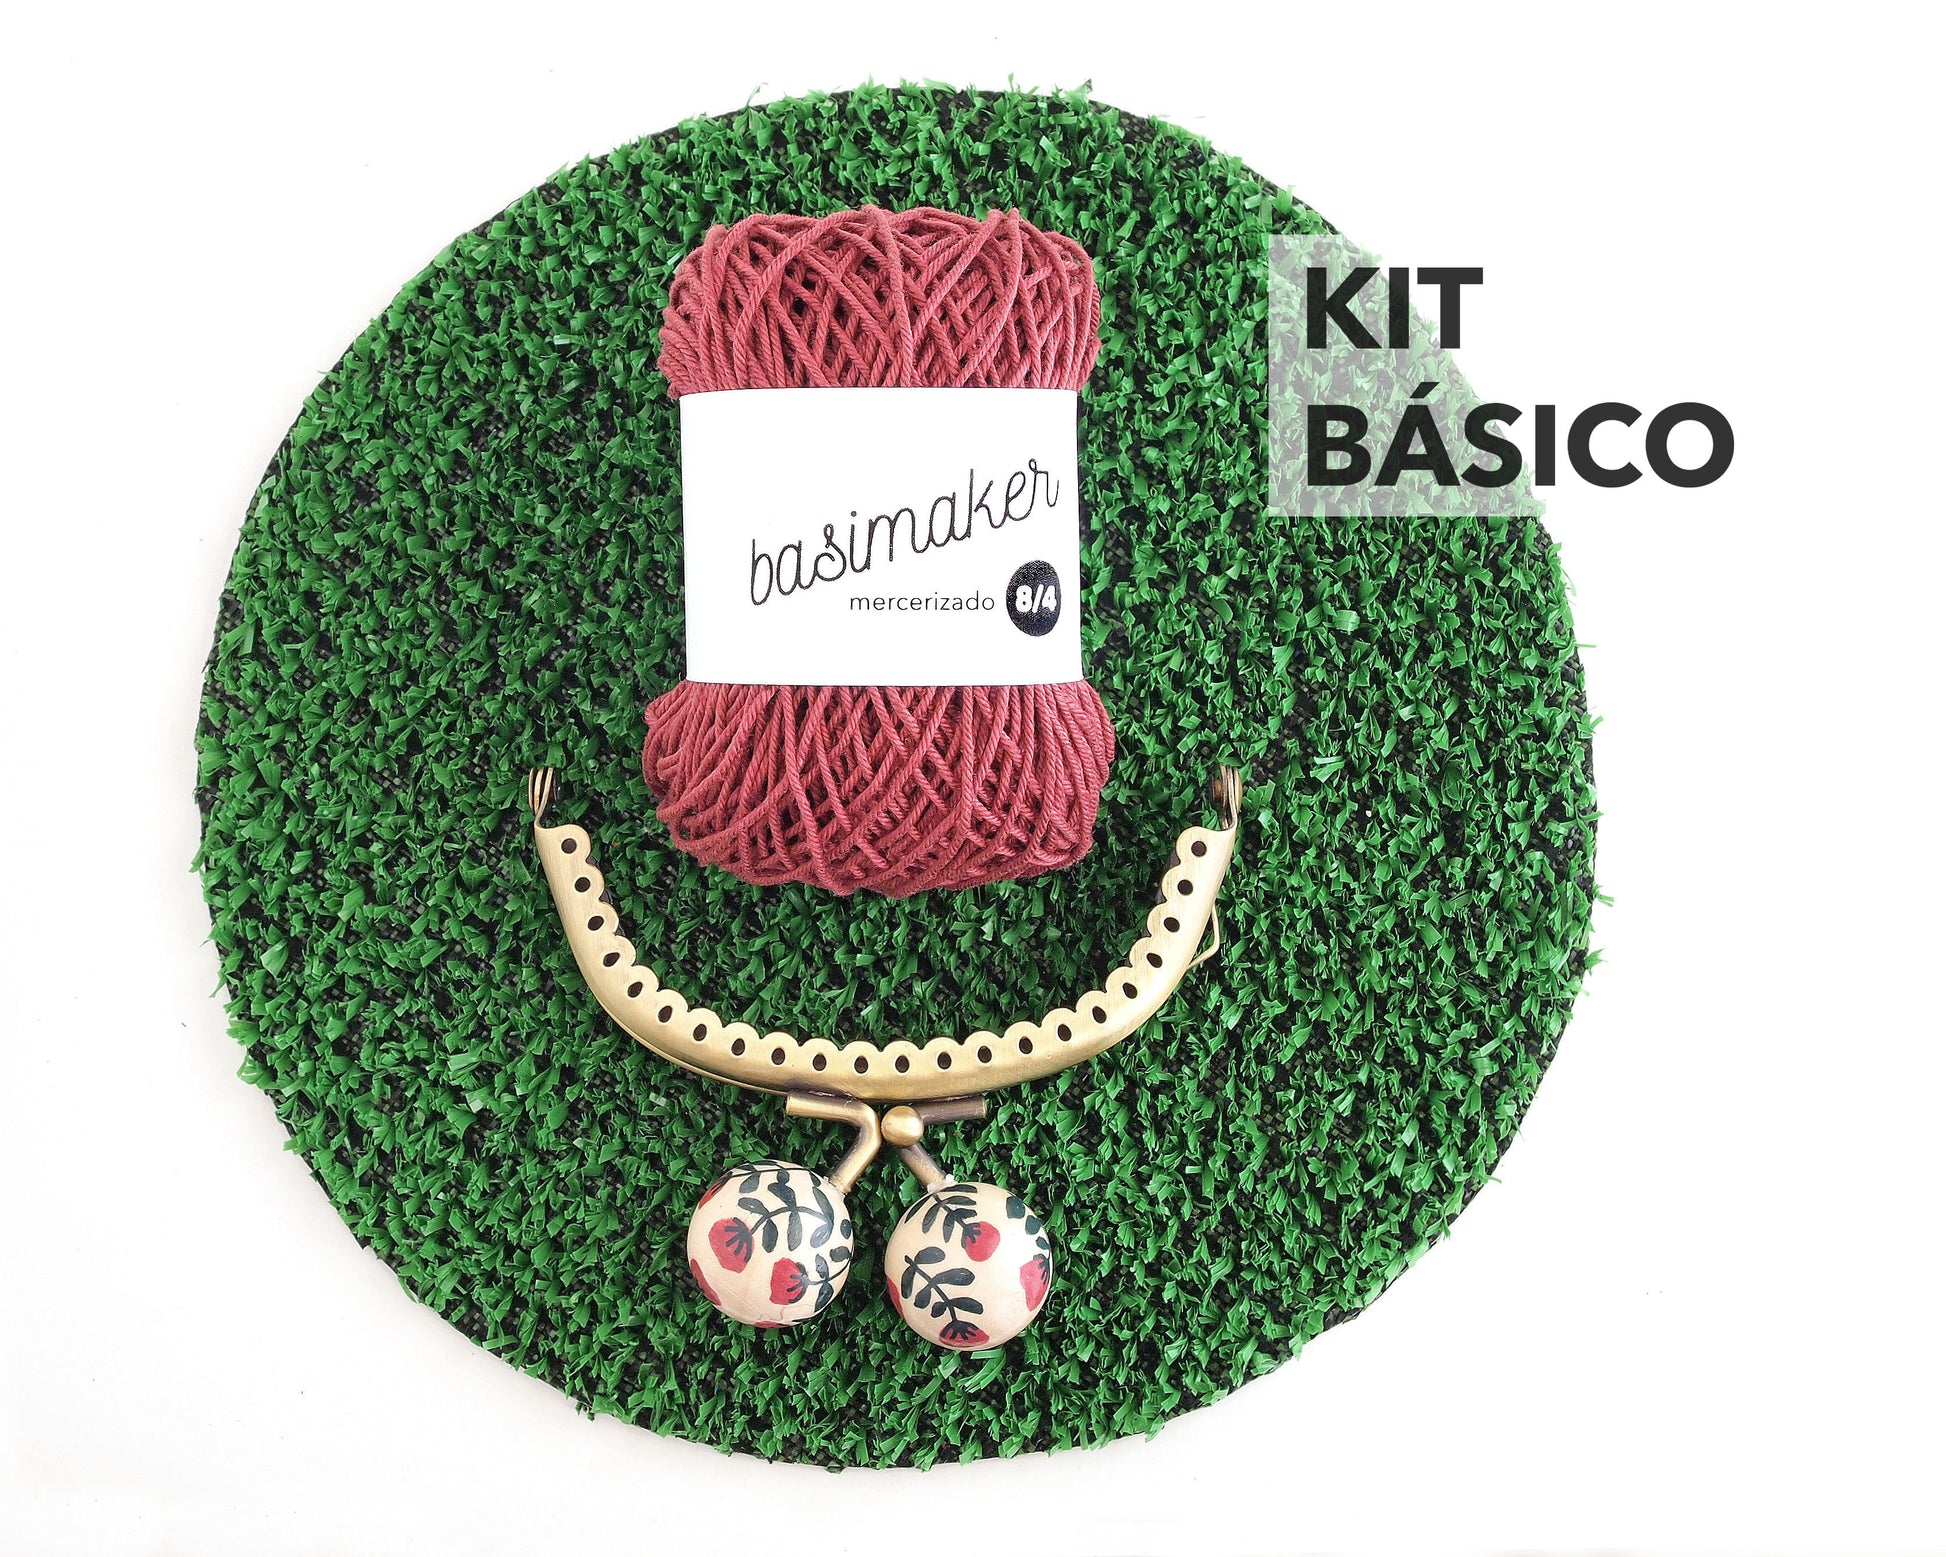 kit básico compuesto por ovillo de hilo rojo y boquilla para monedero sobre círculo de cesped artificial